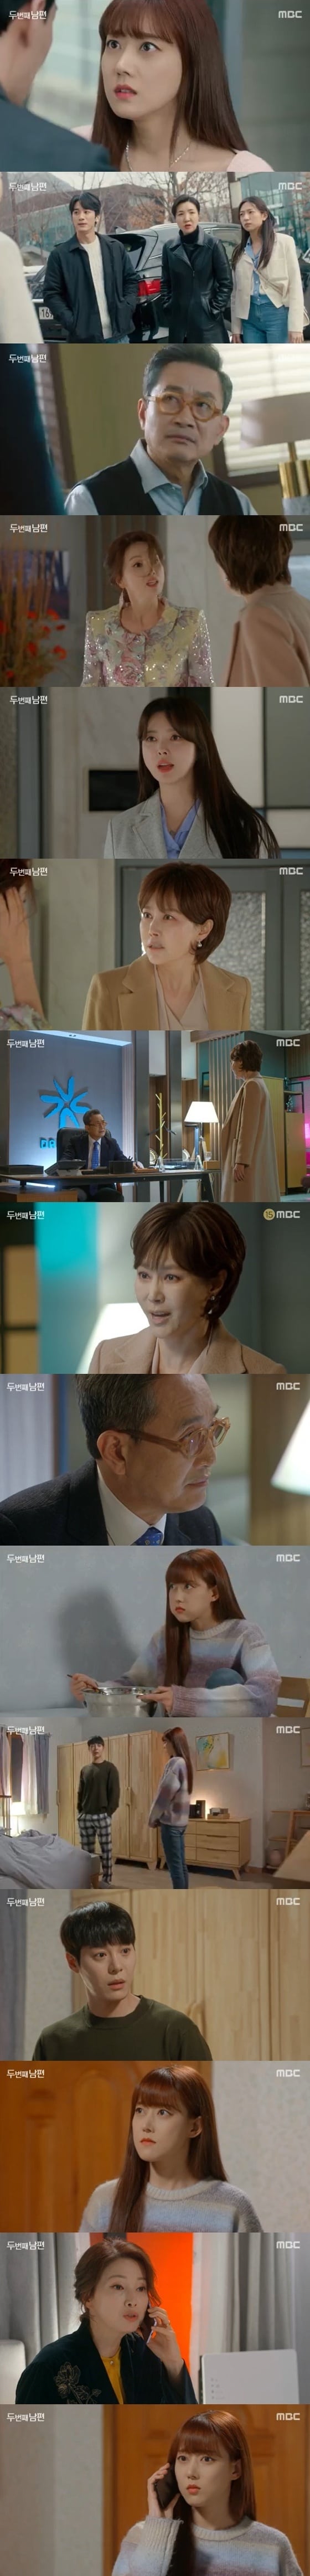 MBC '두 번째 남편' 방송 화면 캡처 © 뉴스1